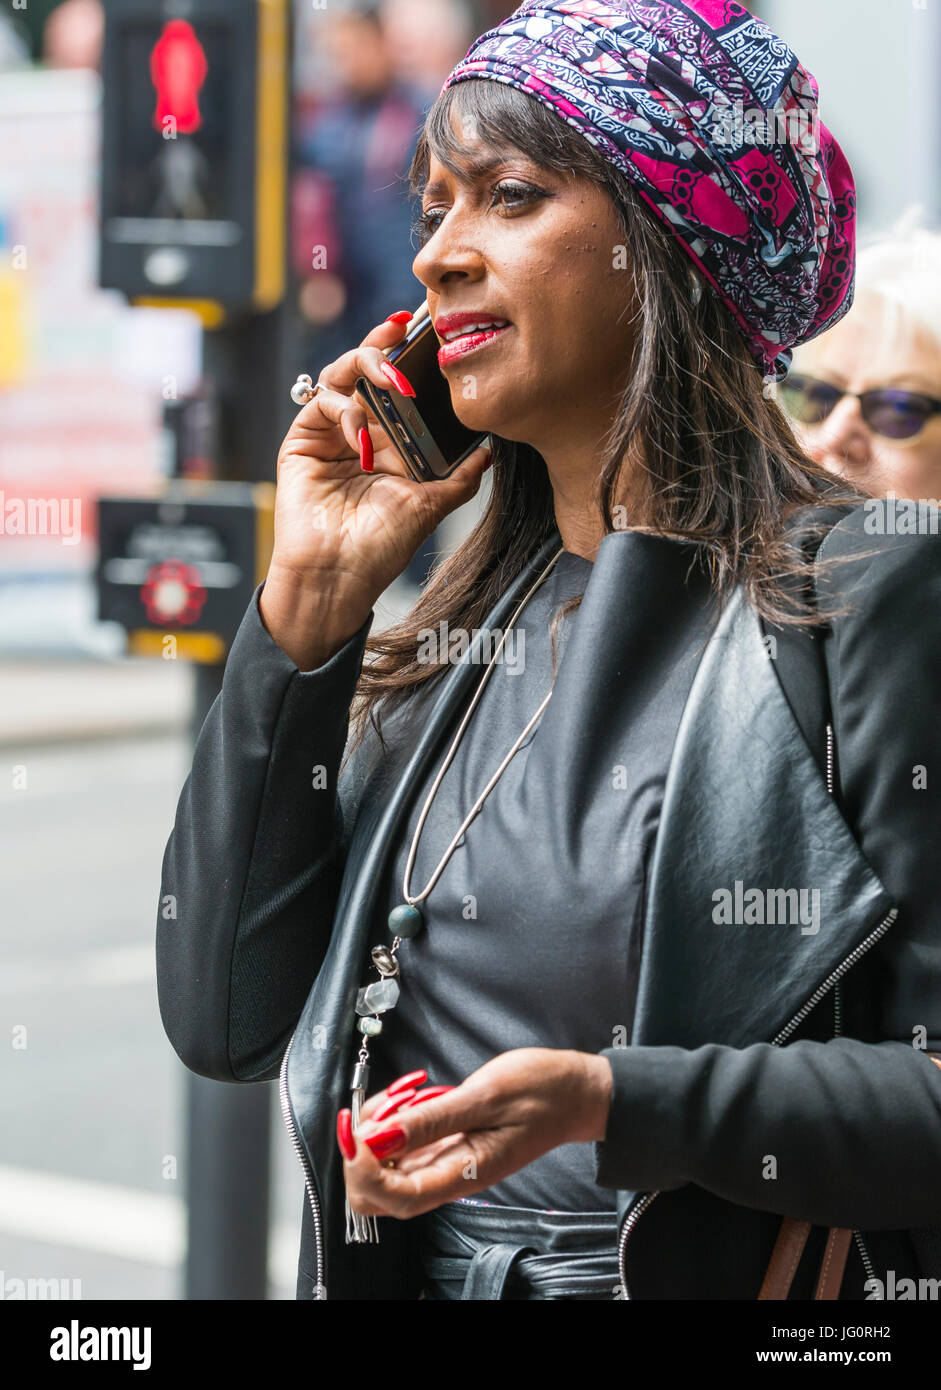 Mujer de origen étnico vistiendo ropas elegantes y una cabeza scrarf mientras camina en una ciudad y hablando por su teléfono móvil. Foto de stock